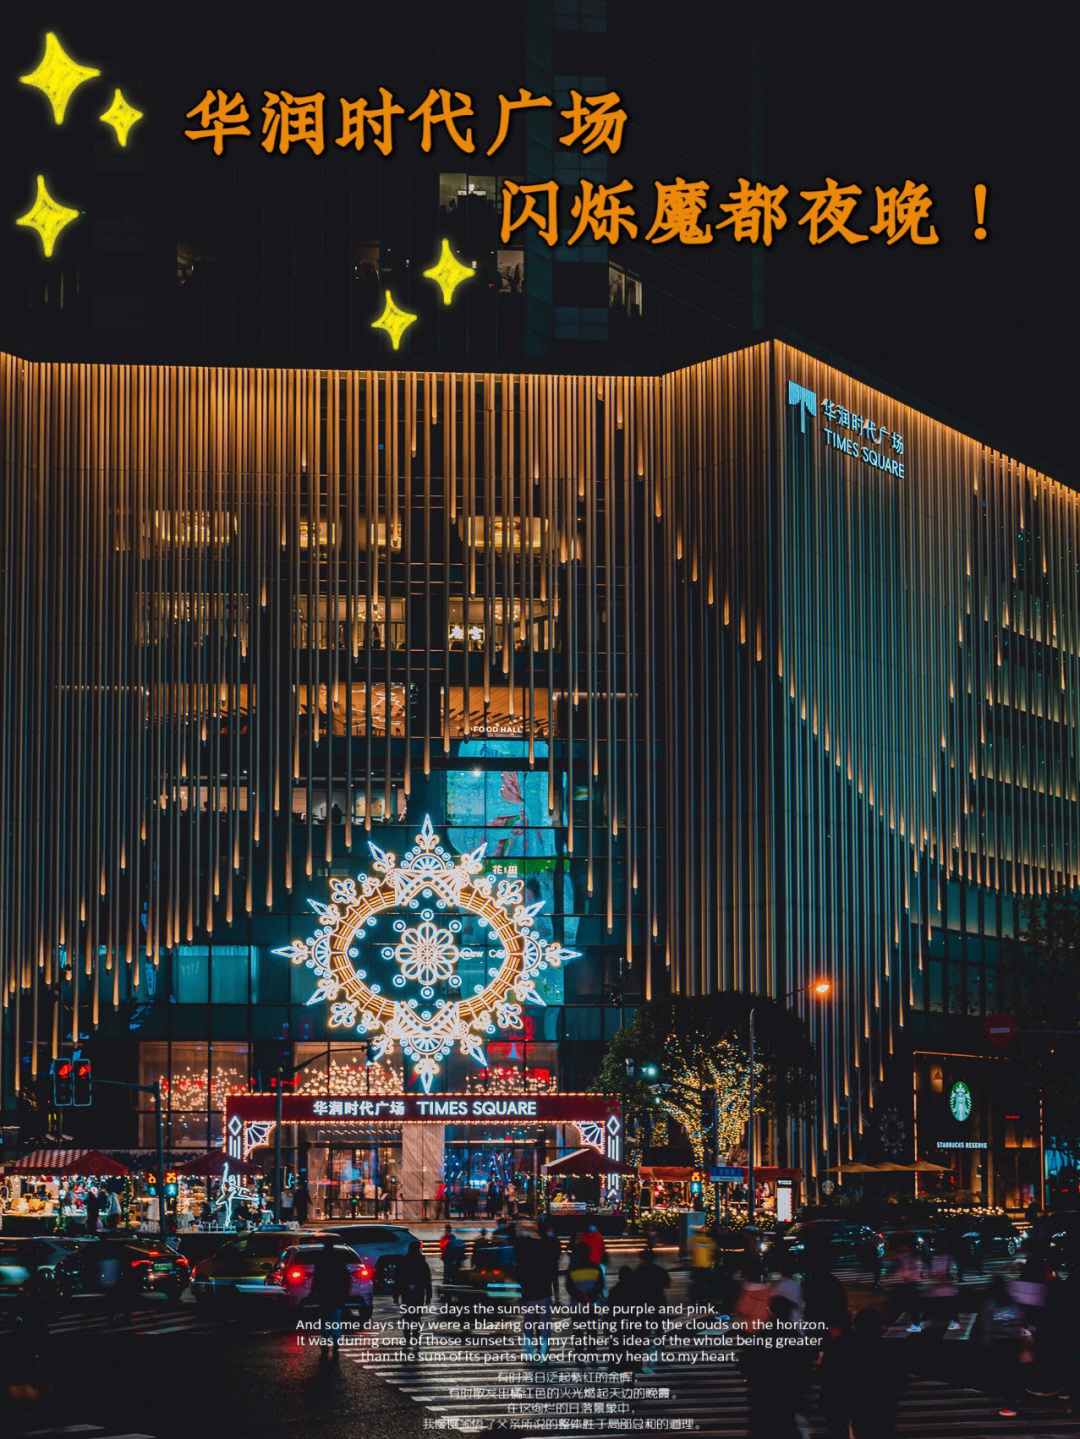 上海华润时代广场大火图片